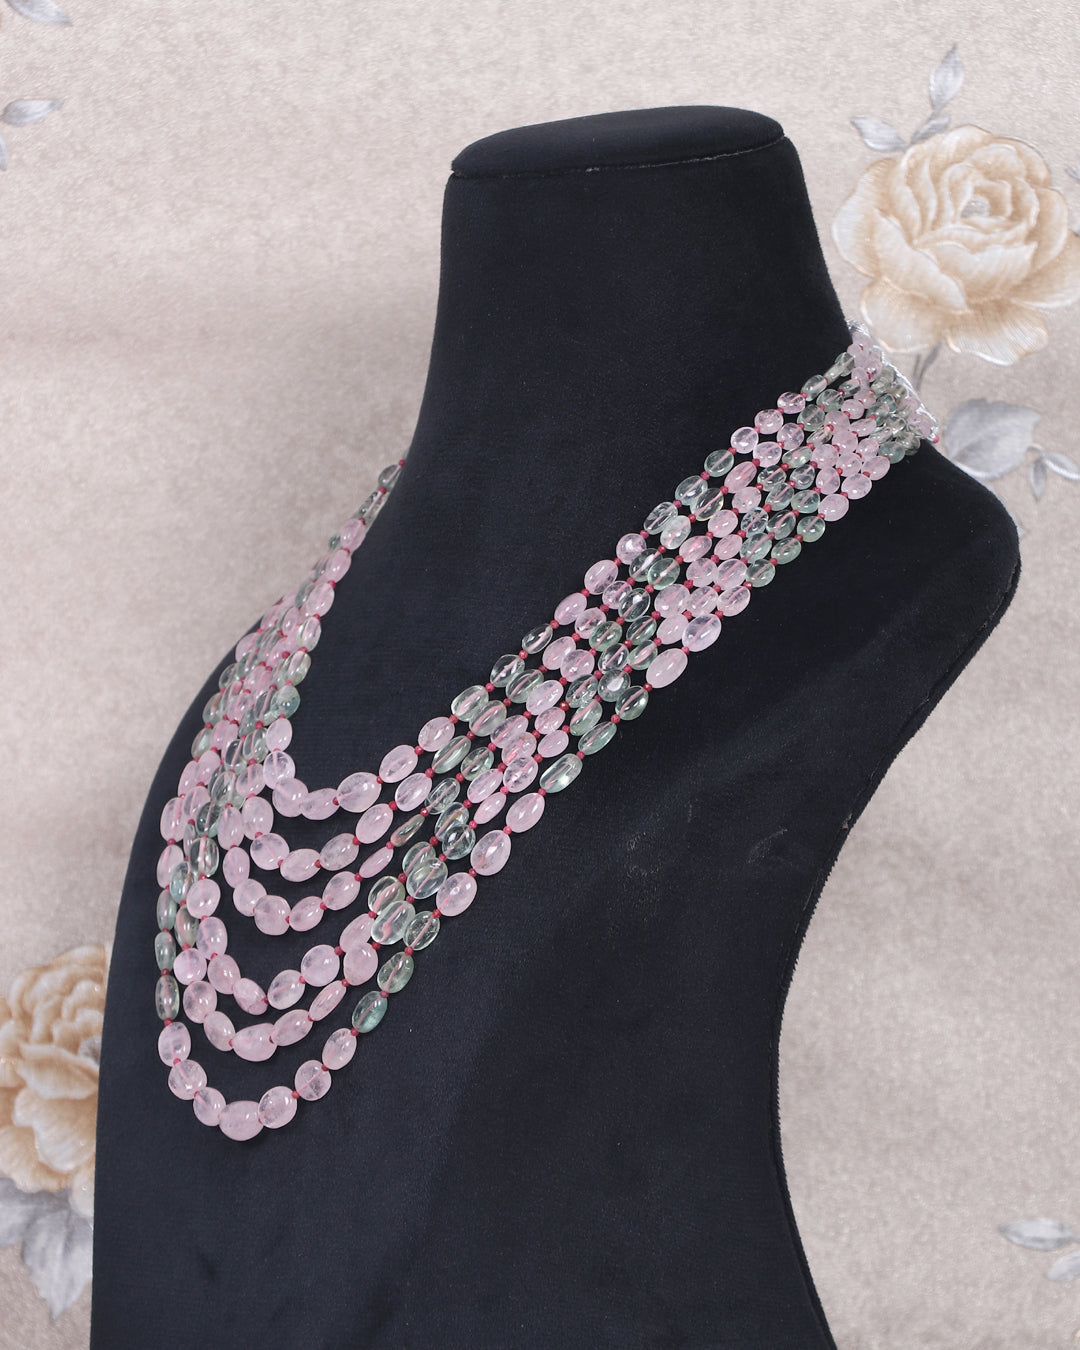 Natural Morganite & Aquamarine Gemstone Beads Necklace Jewelry